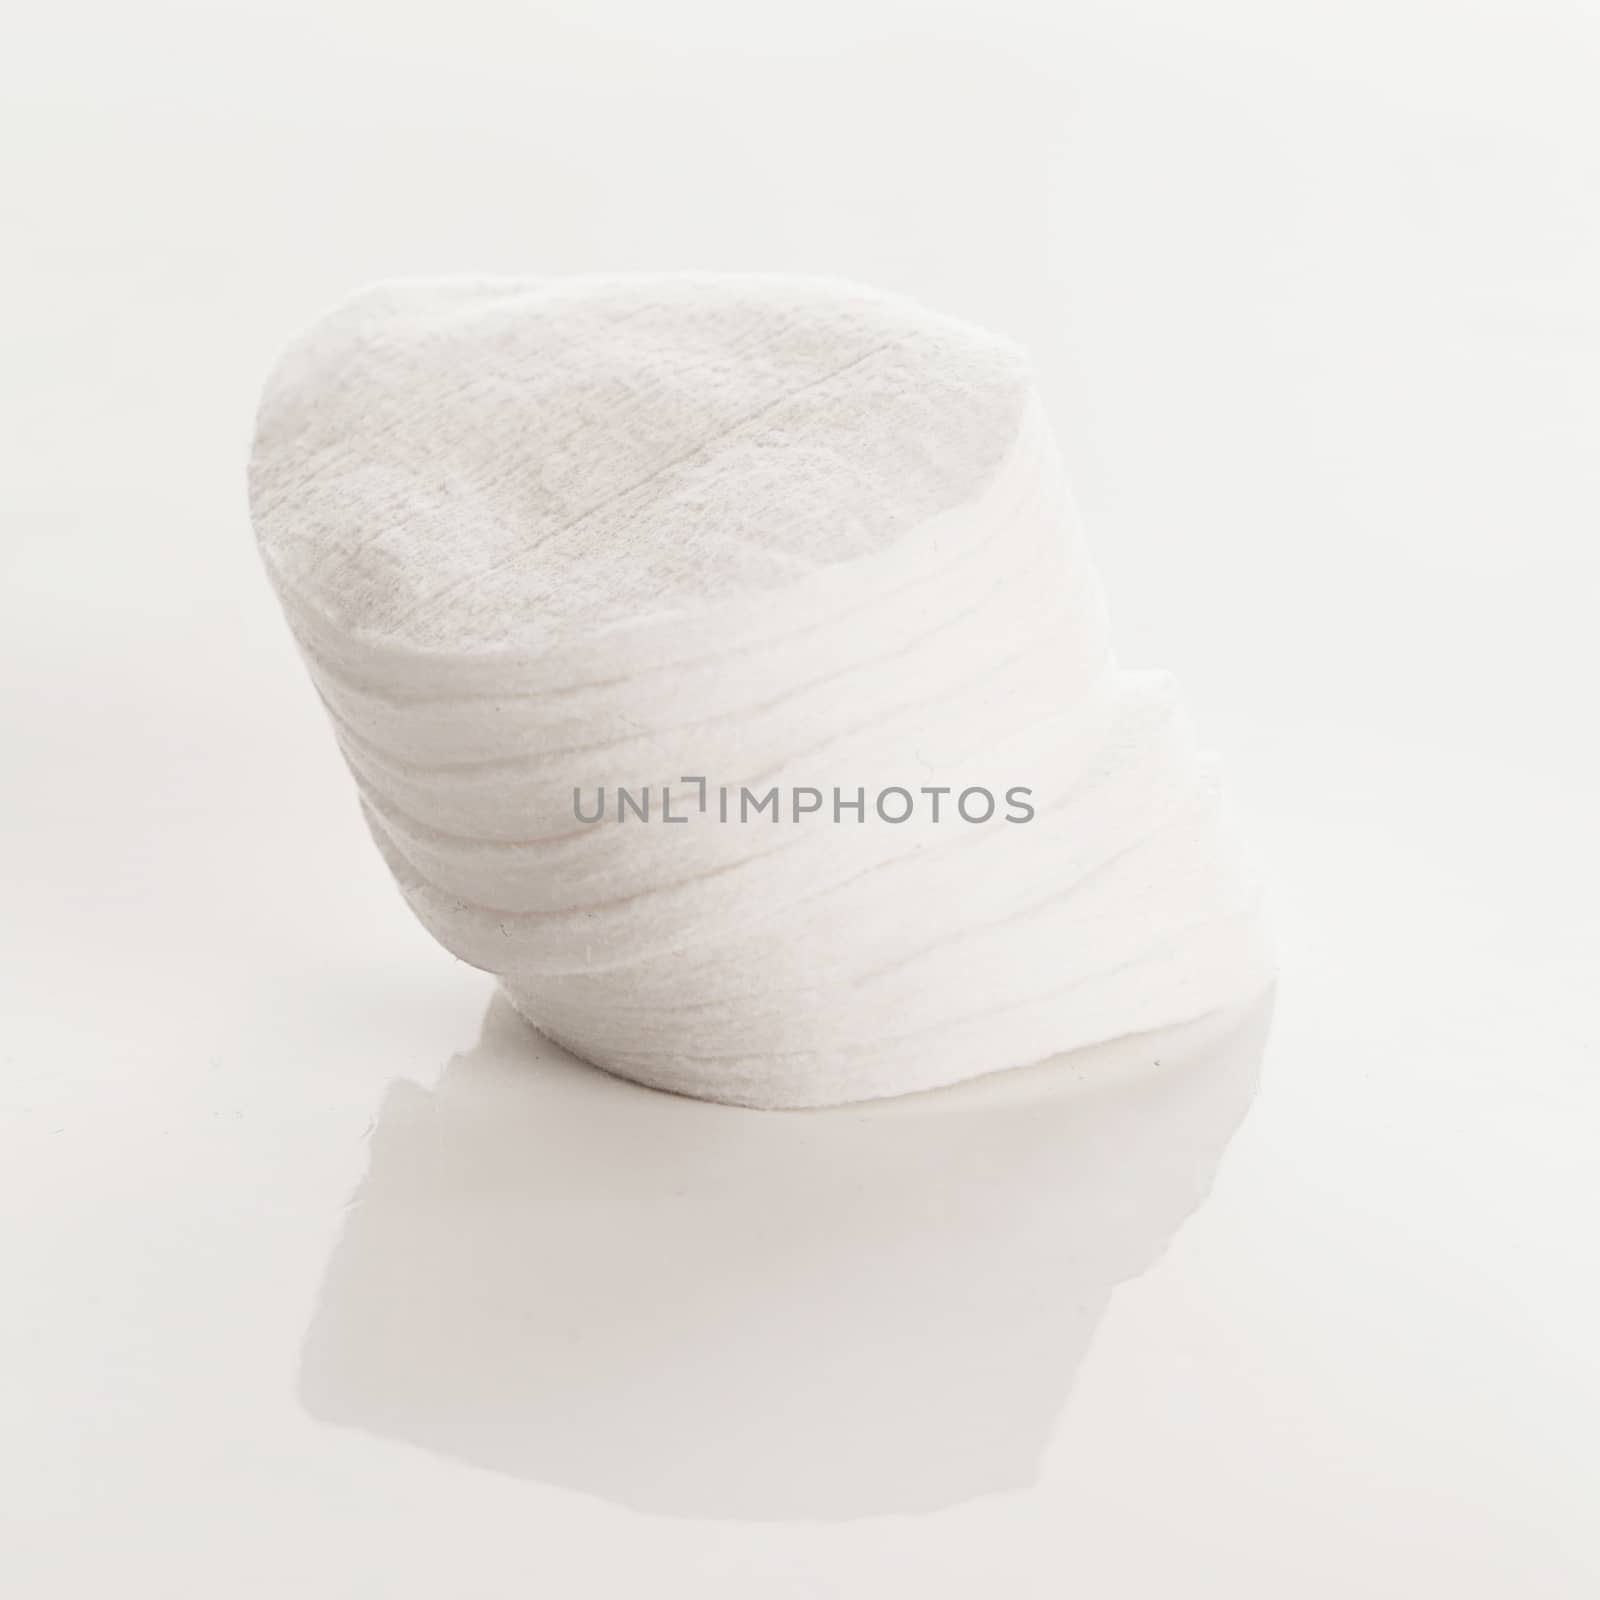 White cotton pads on a white background by rufatjumali